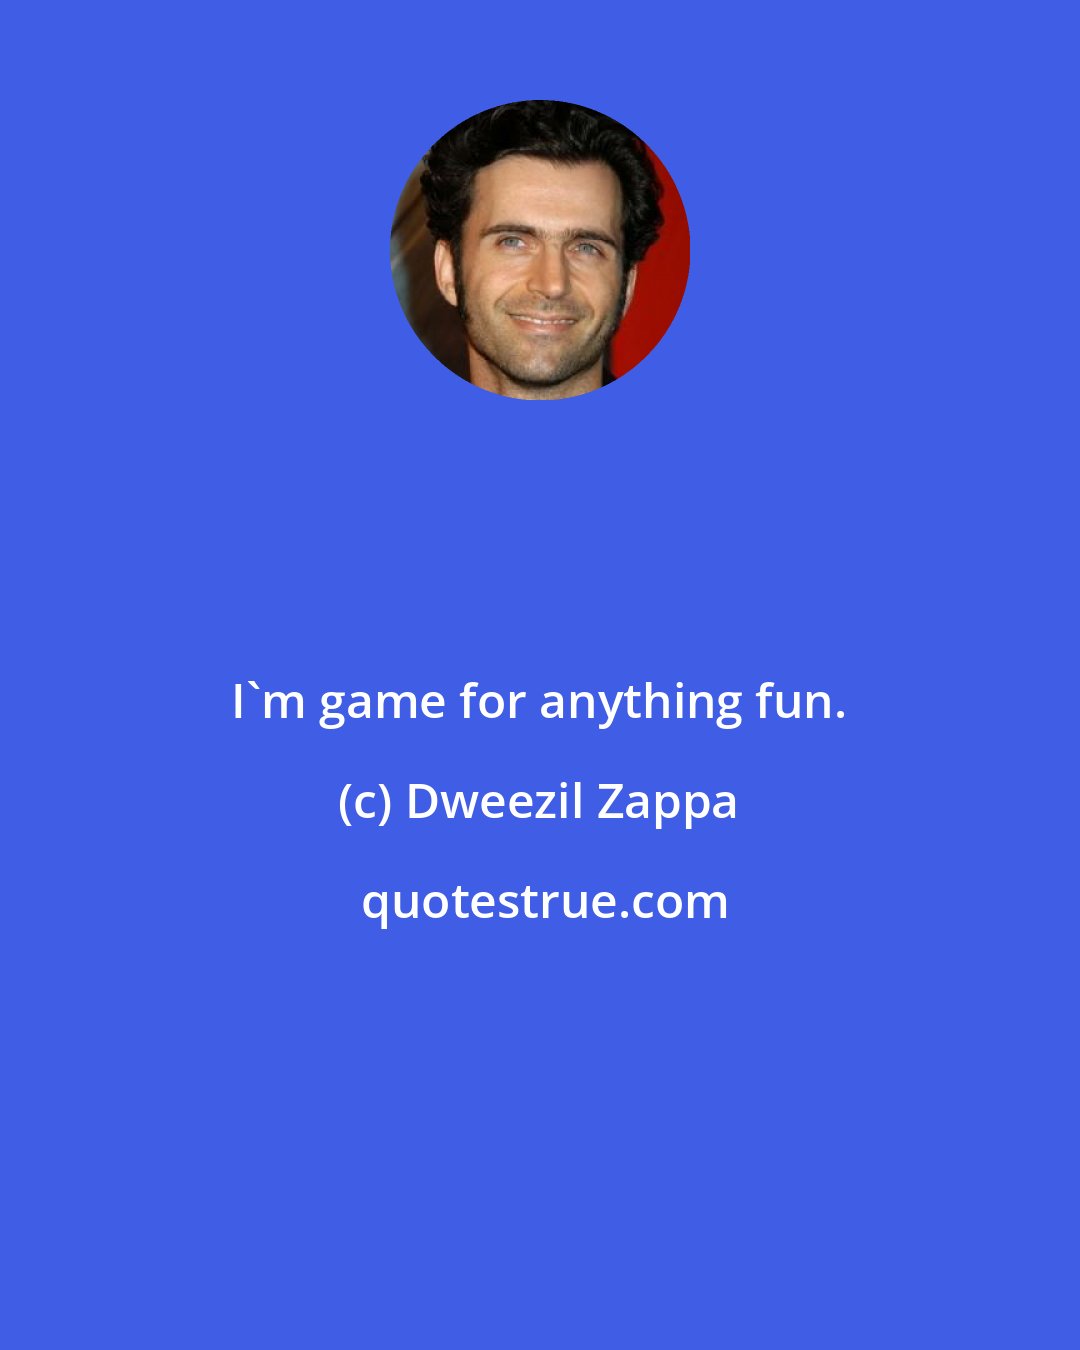 Dweezil Zappa: I'm game for anything fun.